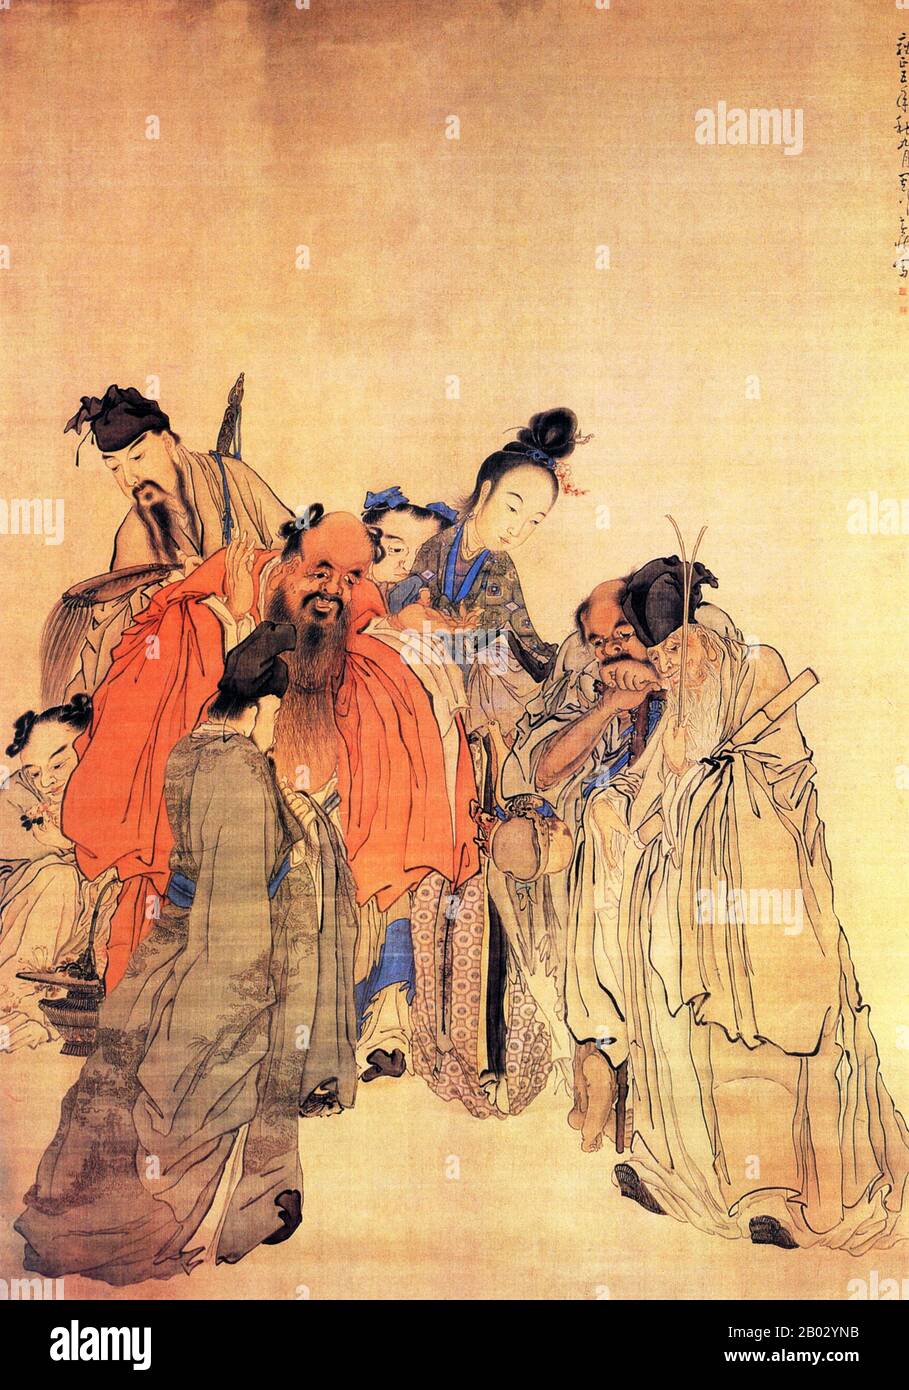 Huang Shen war ein chinesischer Maler während der Qing-Dynastie. Huang wurde in Ninghua, Provinz Fujian, in eine arme Familie geboren. Seine Ausbildung begann er unter dem Maler Shangguan Zhou. Im ersten Teil seiner Karriere zeichnete er sich bei kursiver Kalligraphie aus und favorisierte einen akribischen Stil nach dem Vorbild von Ni Zan. Er wurde bekannter als künstlerischer Innovator, der einer Der Acht Exzentriker von Yangzhou war. Als es um Gemälde von Menschen ging, bevorzugte er Bilder religiöser, historischer und gemeinsamer Menschen. Zu seinen bekannteren Werken gehören Der Betrunkene Mönch und der Hirte Su Wu. Stockfoto